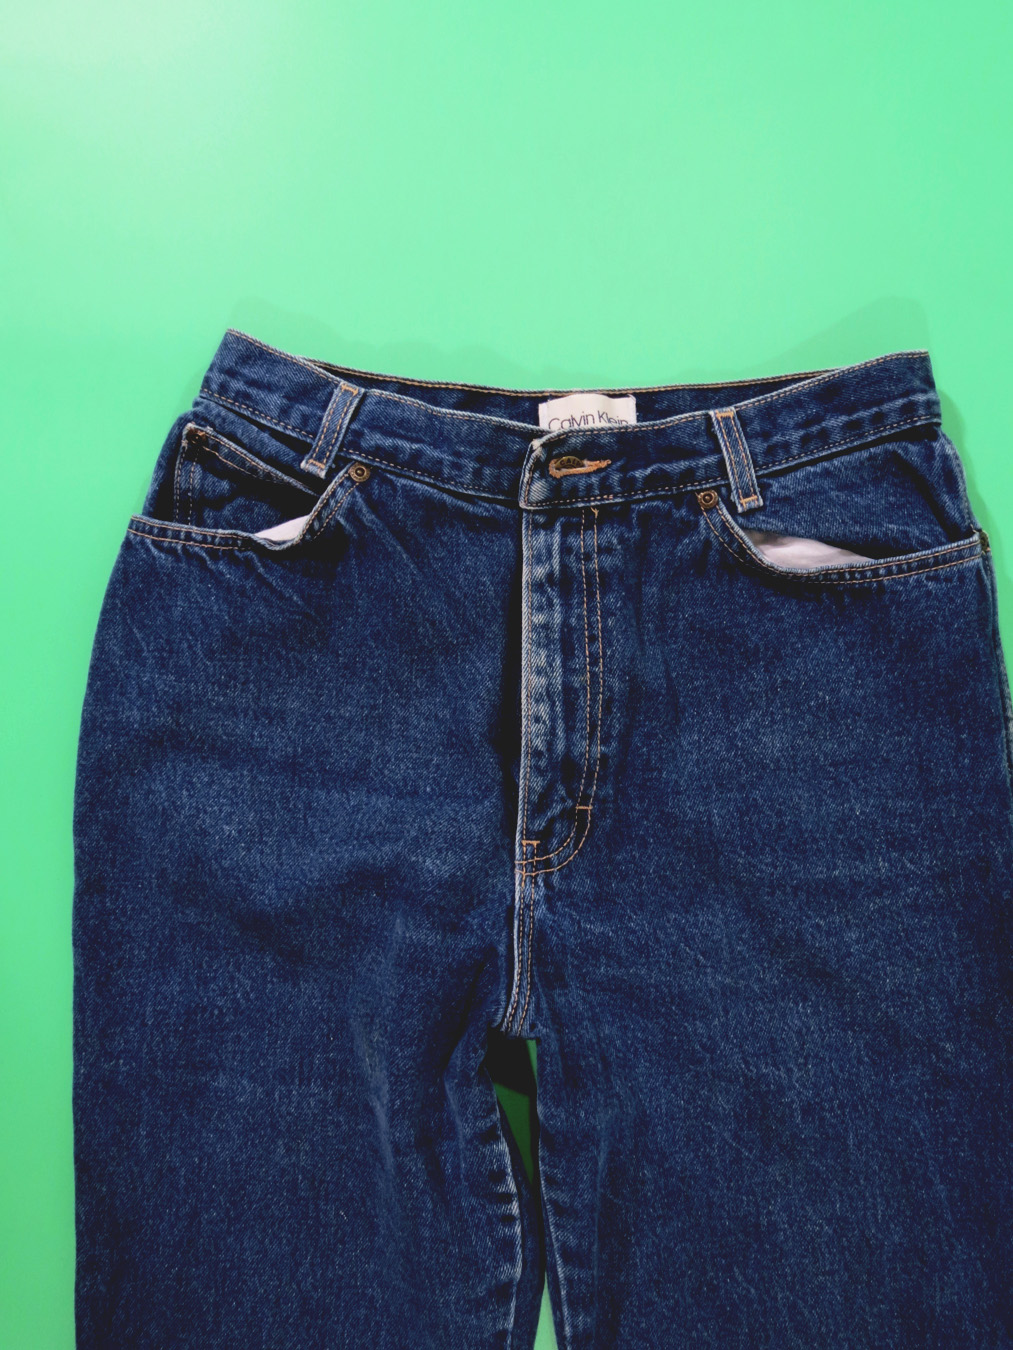 80s Calvin Klein Denim Womens Jeans - 5 Star Vintage